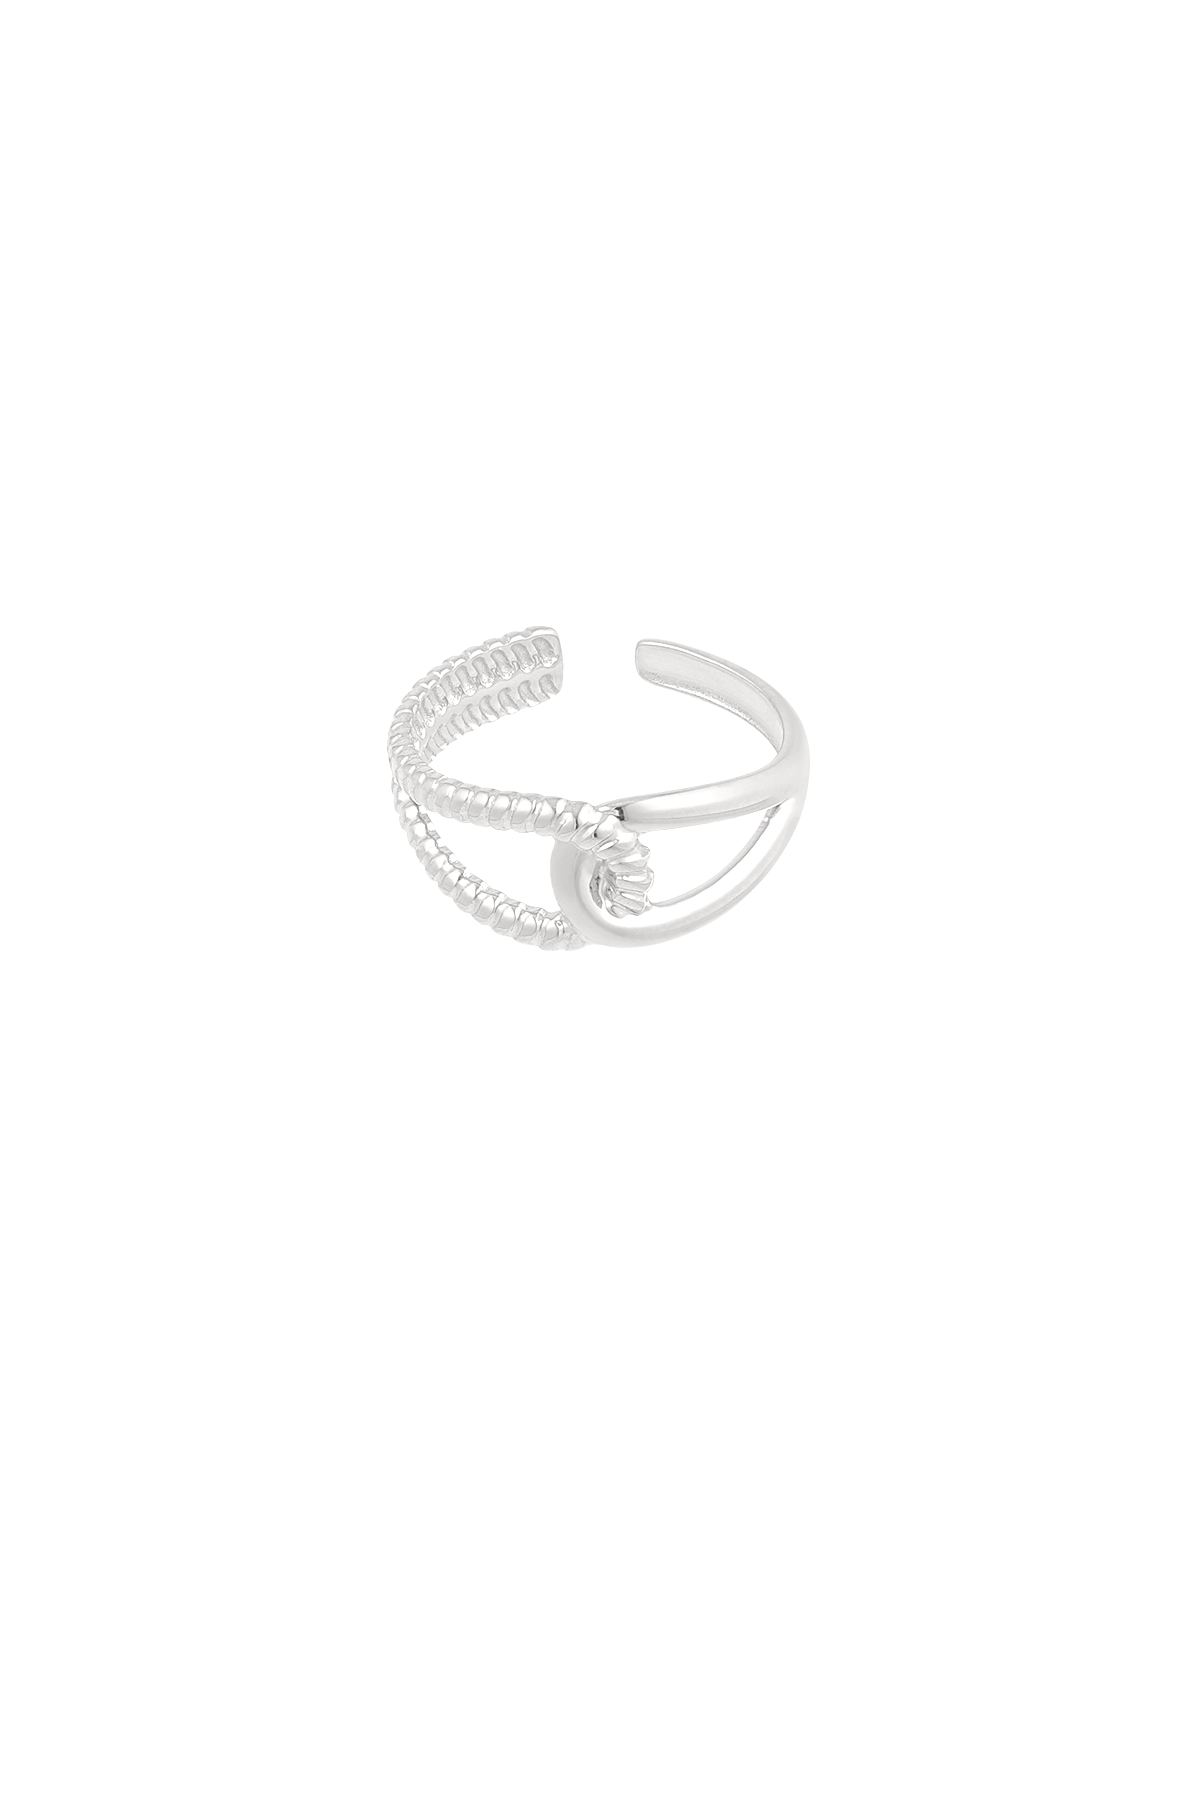 Ring für immer verbunden - Silber Bild3